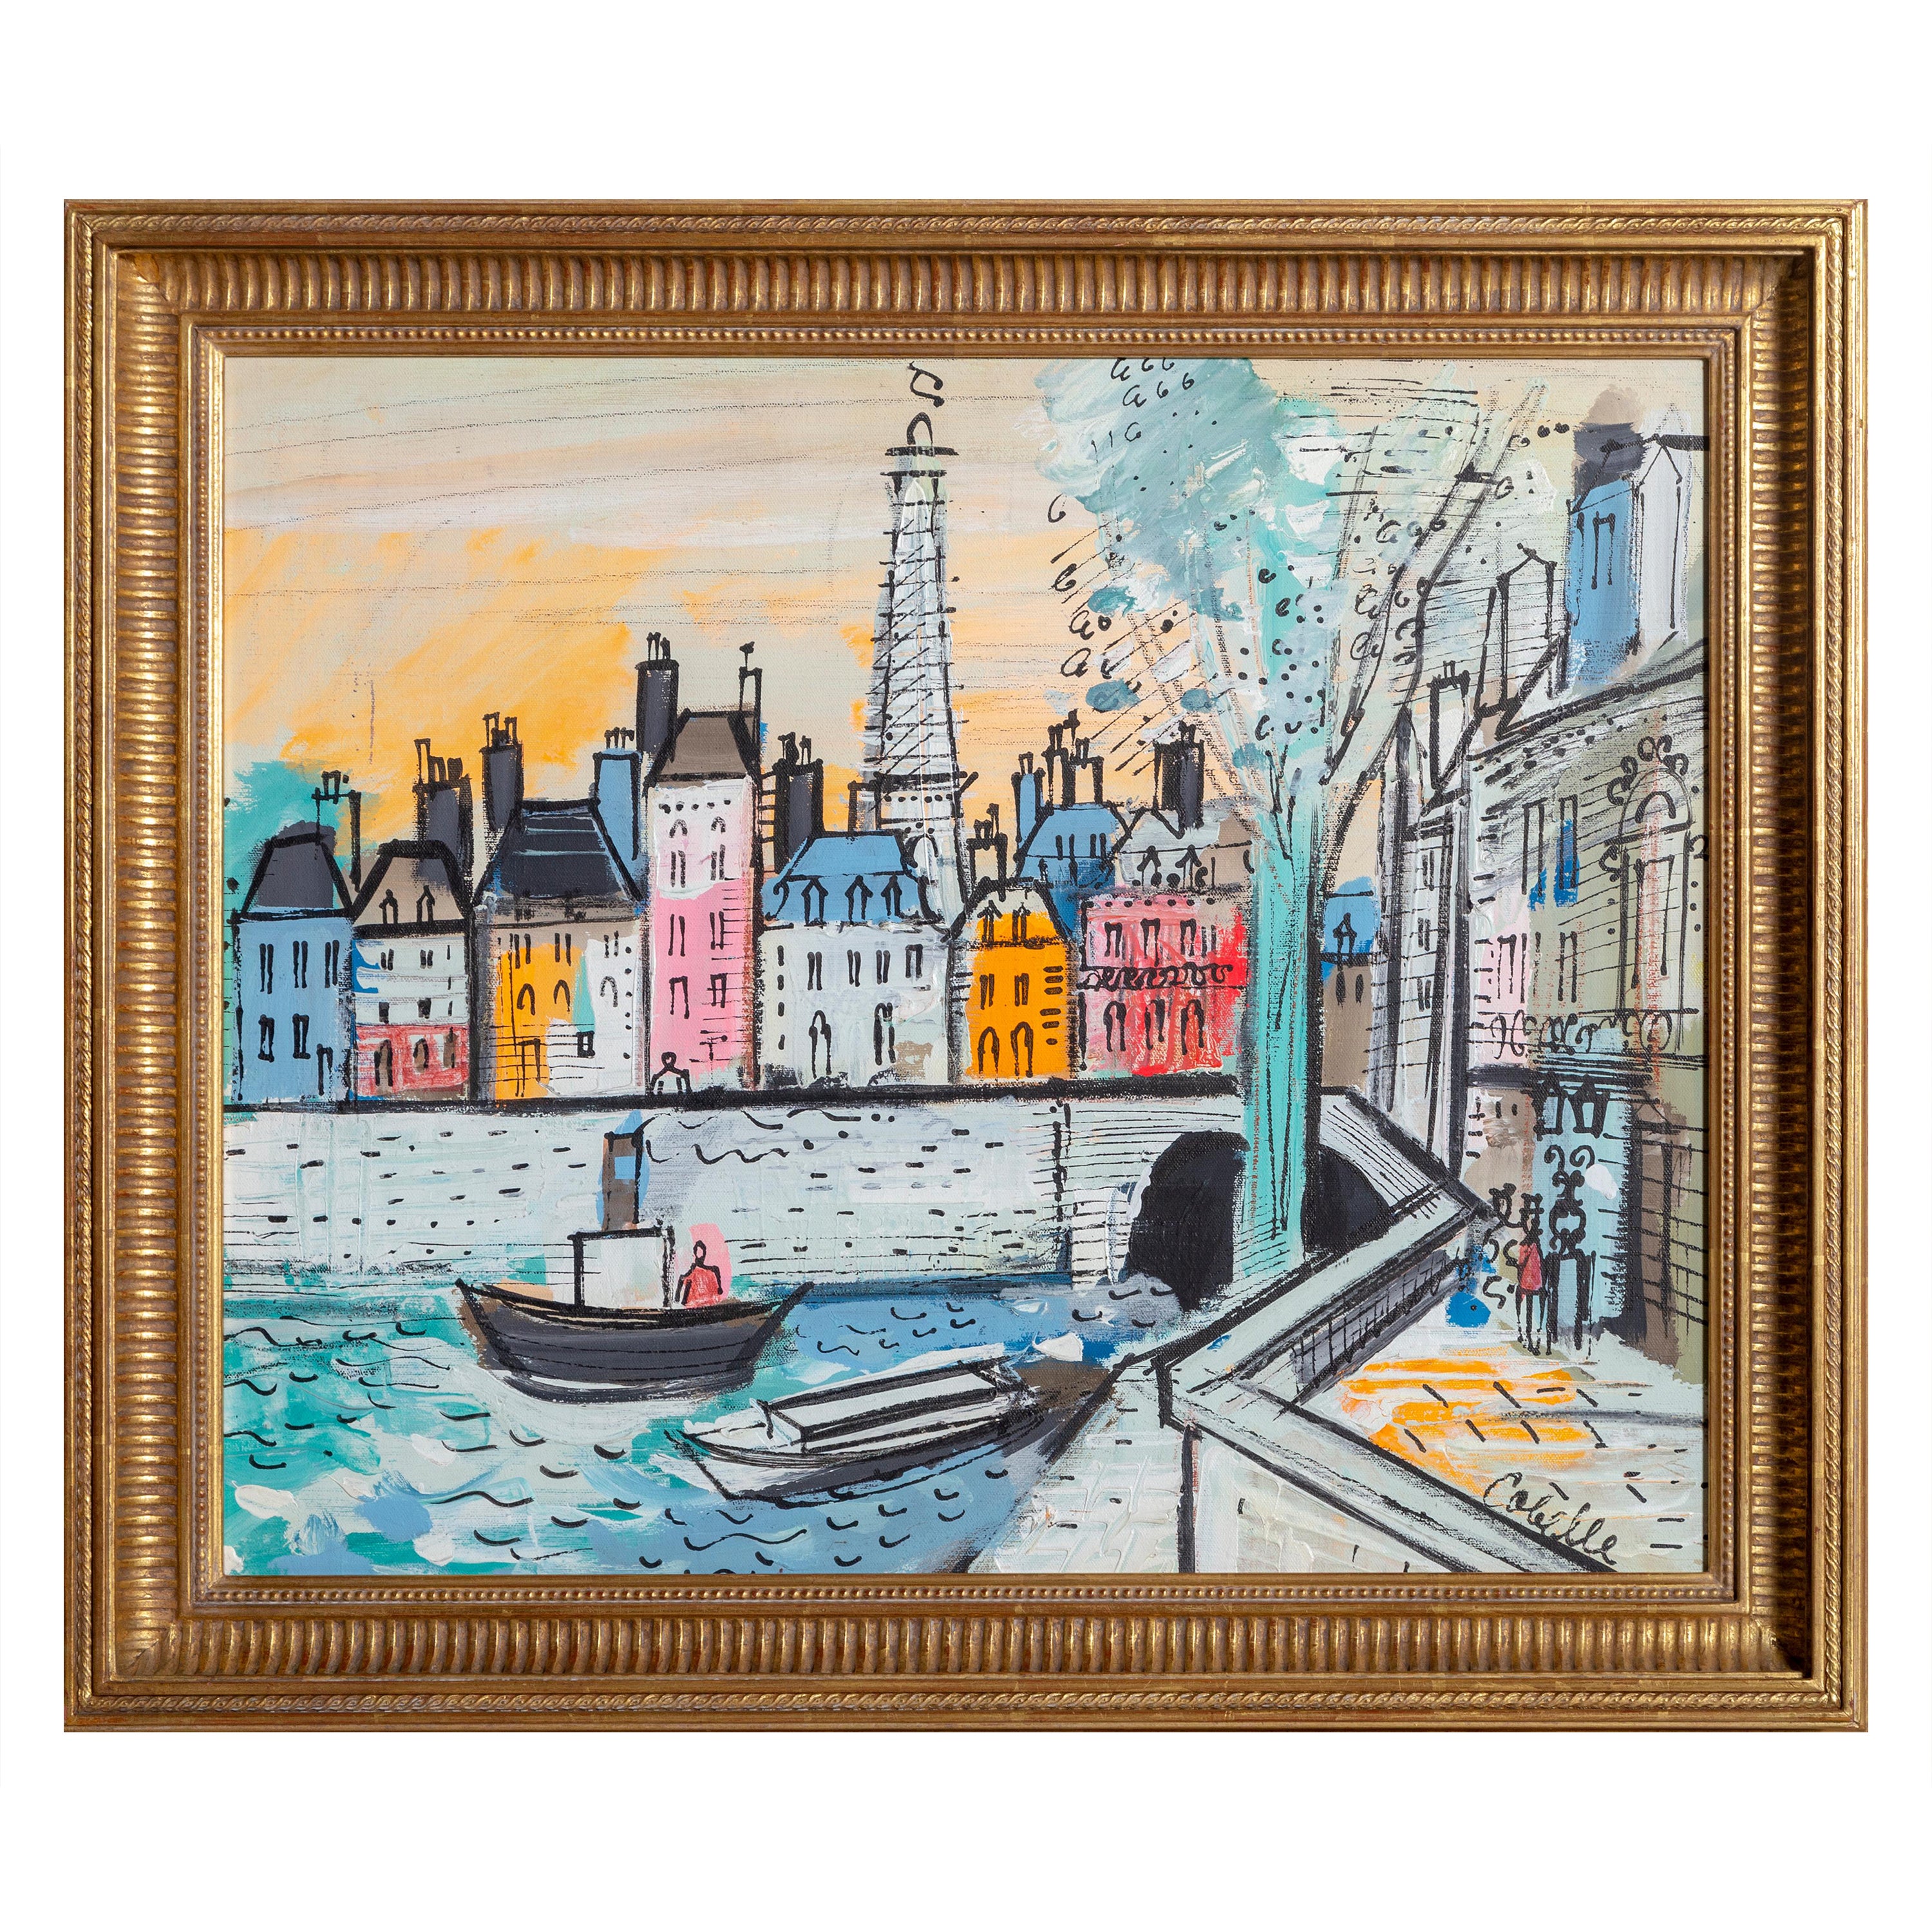 Ein idyllisches Gemälde des französischen Künstlers Charles Cobelle, das den belebten Fluss Seine in Paris zeigt. Cobelle war ein anerkannter französischer Künstler, der bei Marc Chagall und Raoul Dufy studierte. Mit den Fähigkeiten, die er während